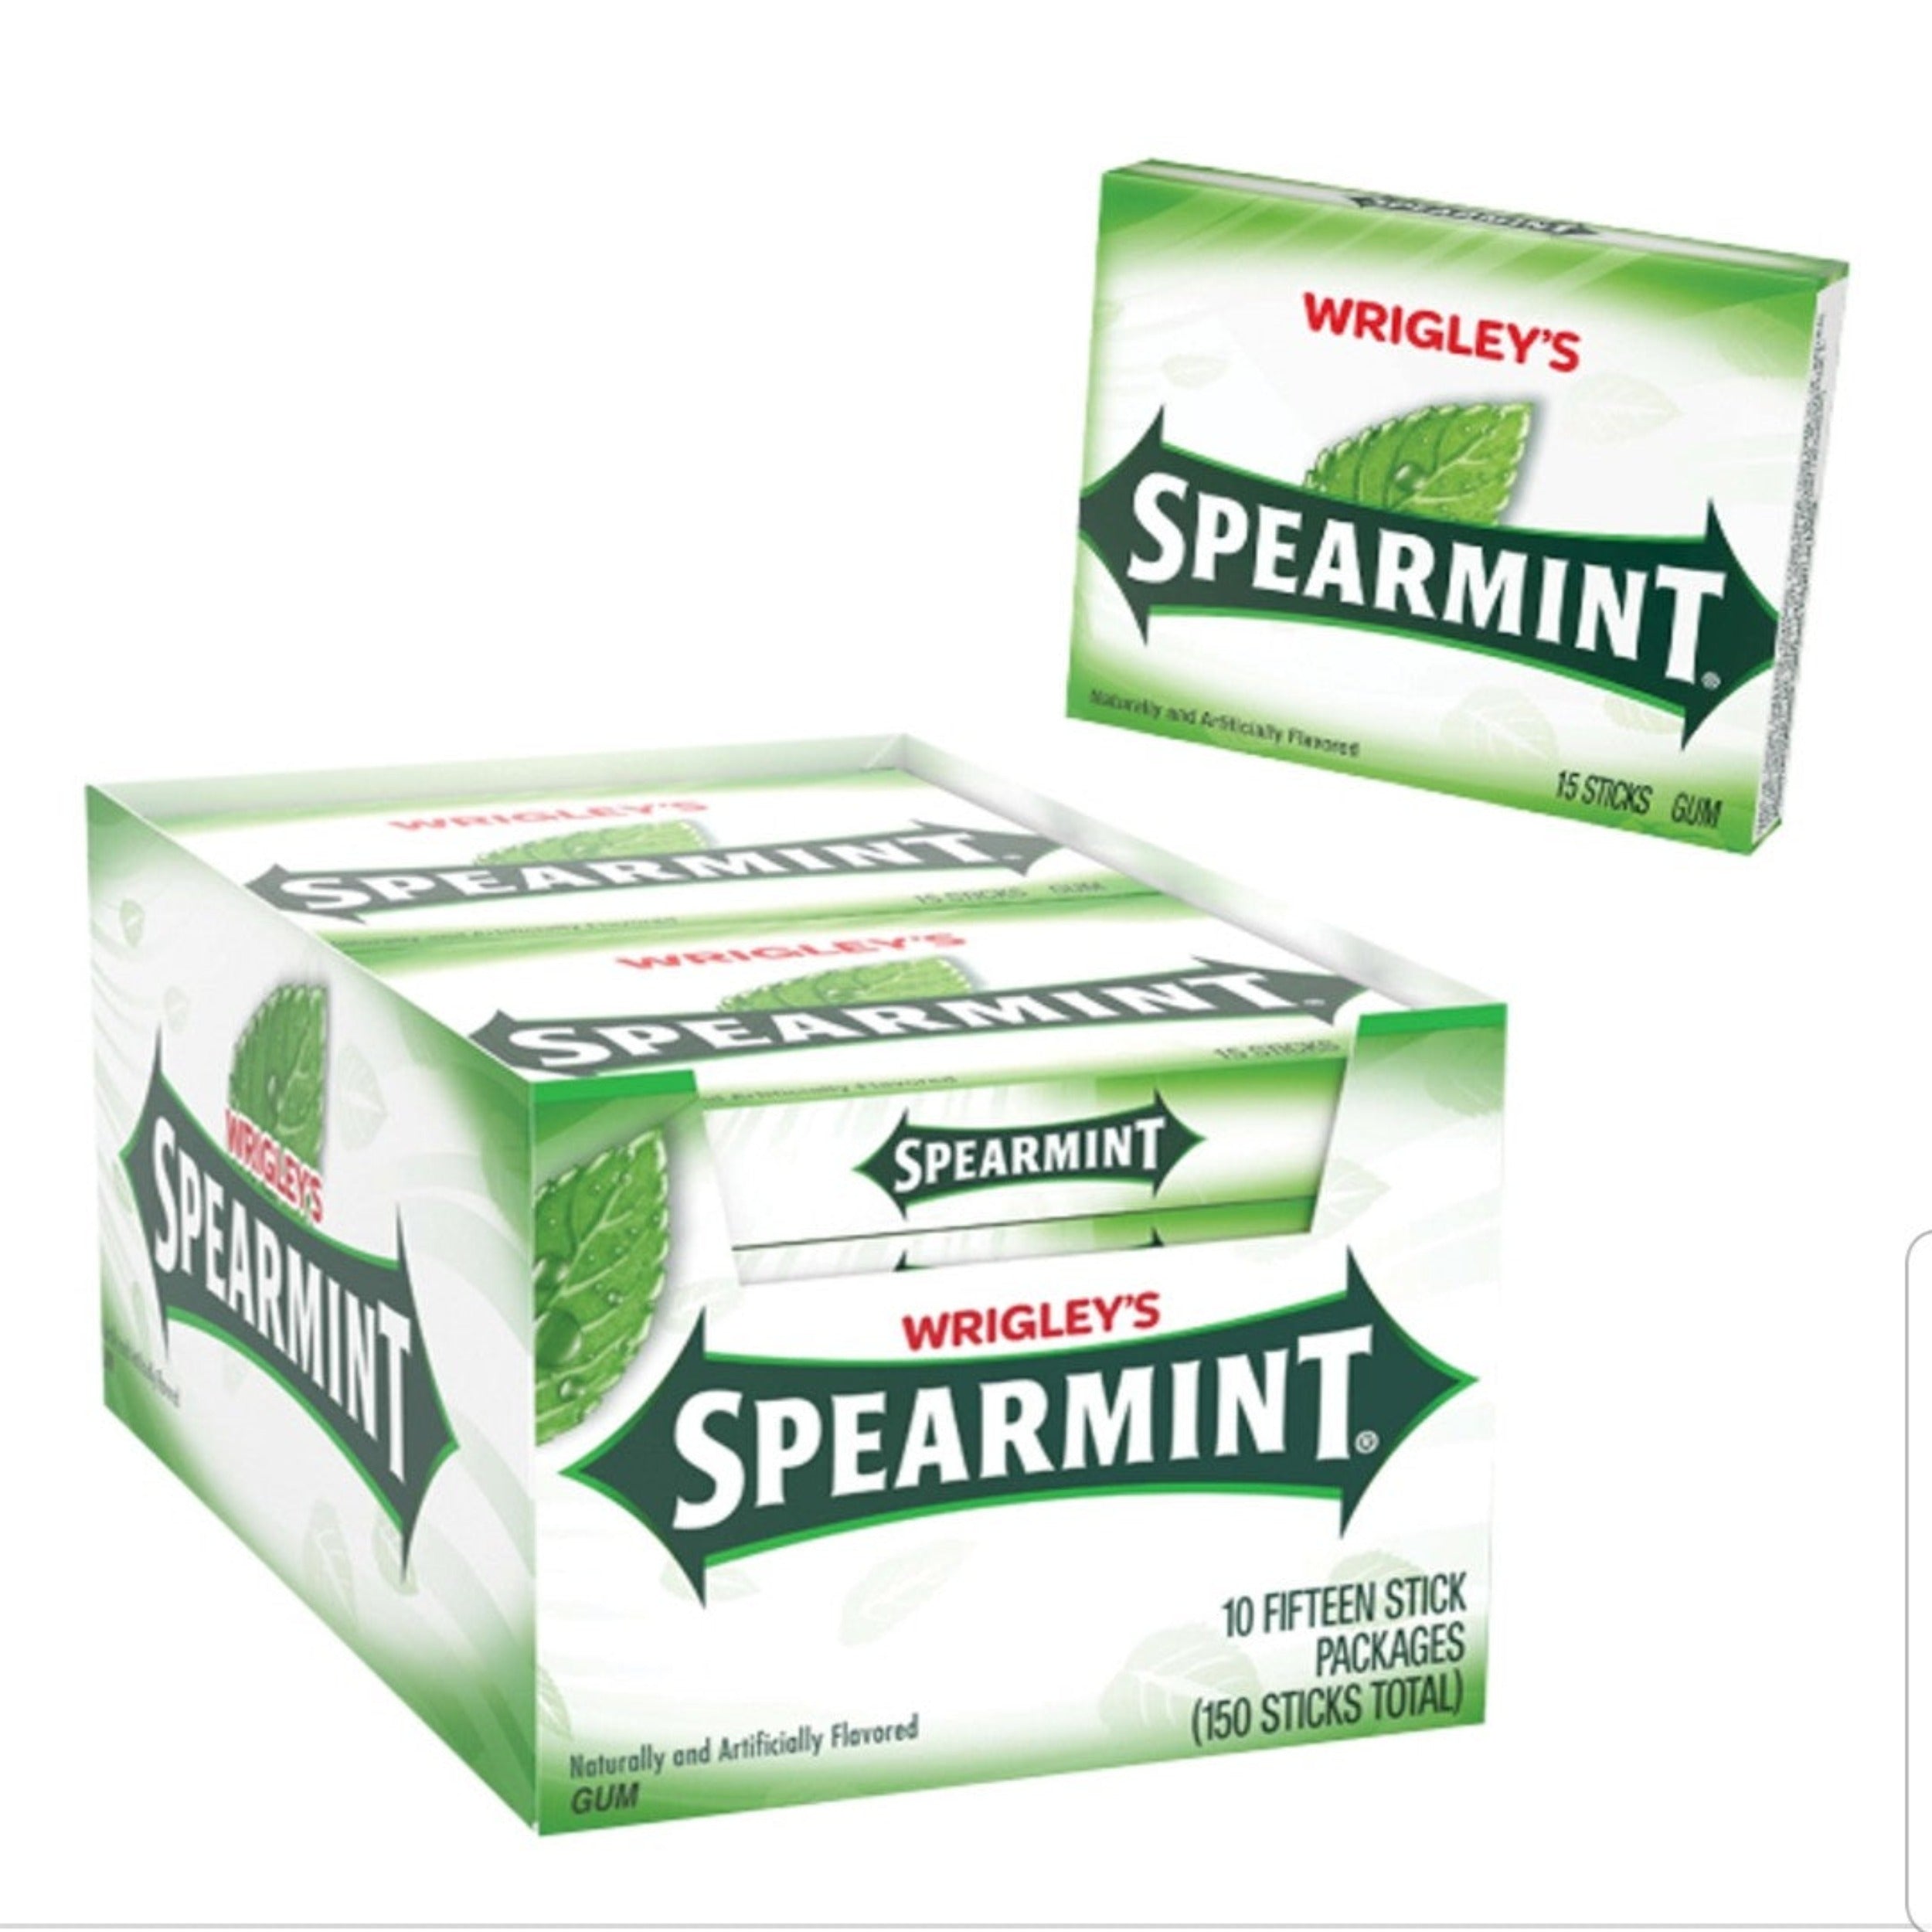 Wrigley's Spearmint Gum